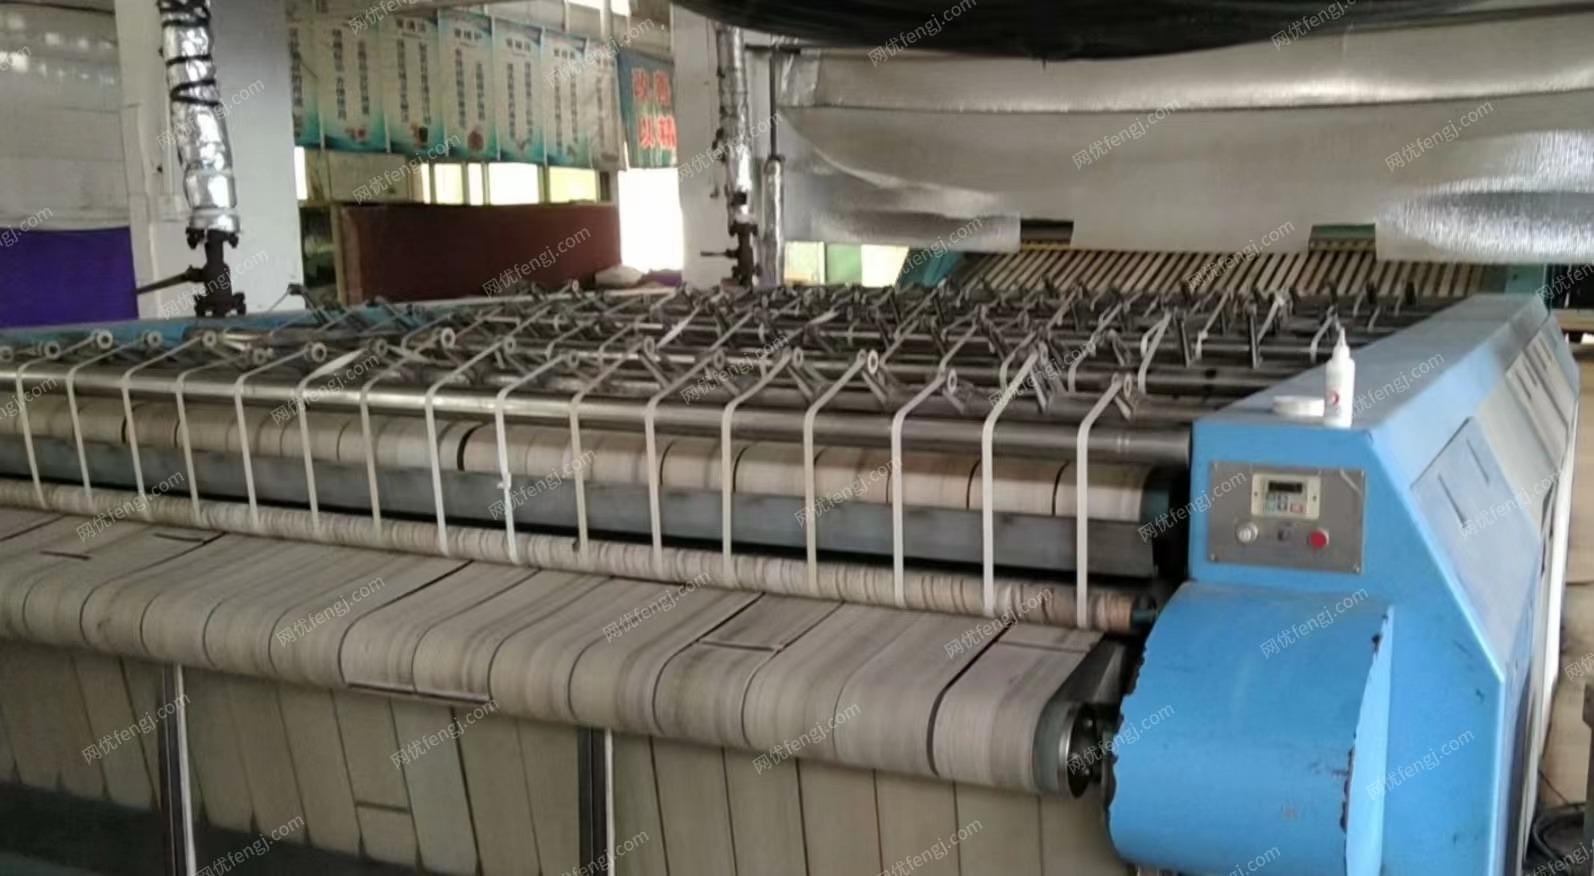 广西桂林二手5辊烫平机、折叠机、烘干机、洗衣机处理